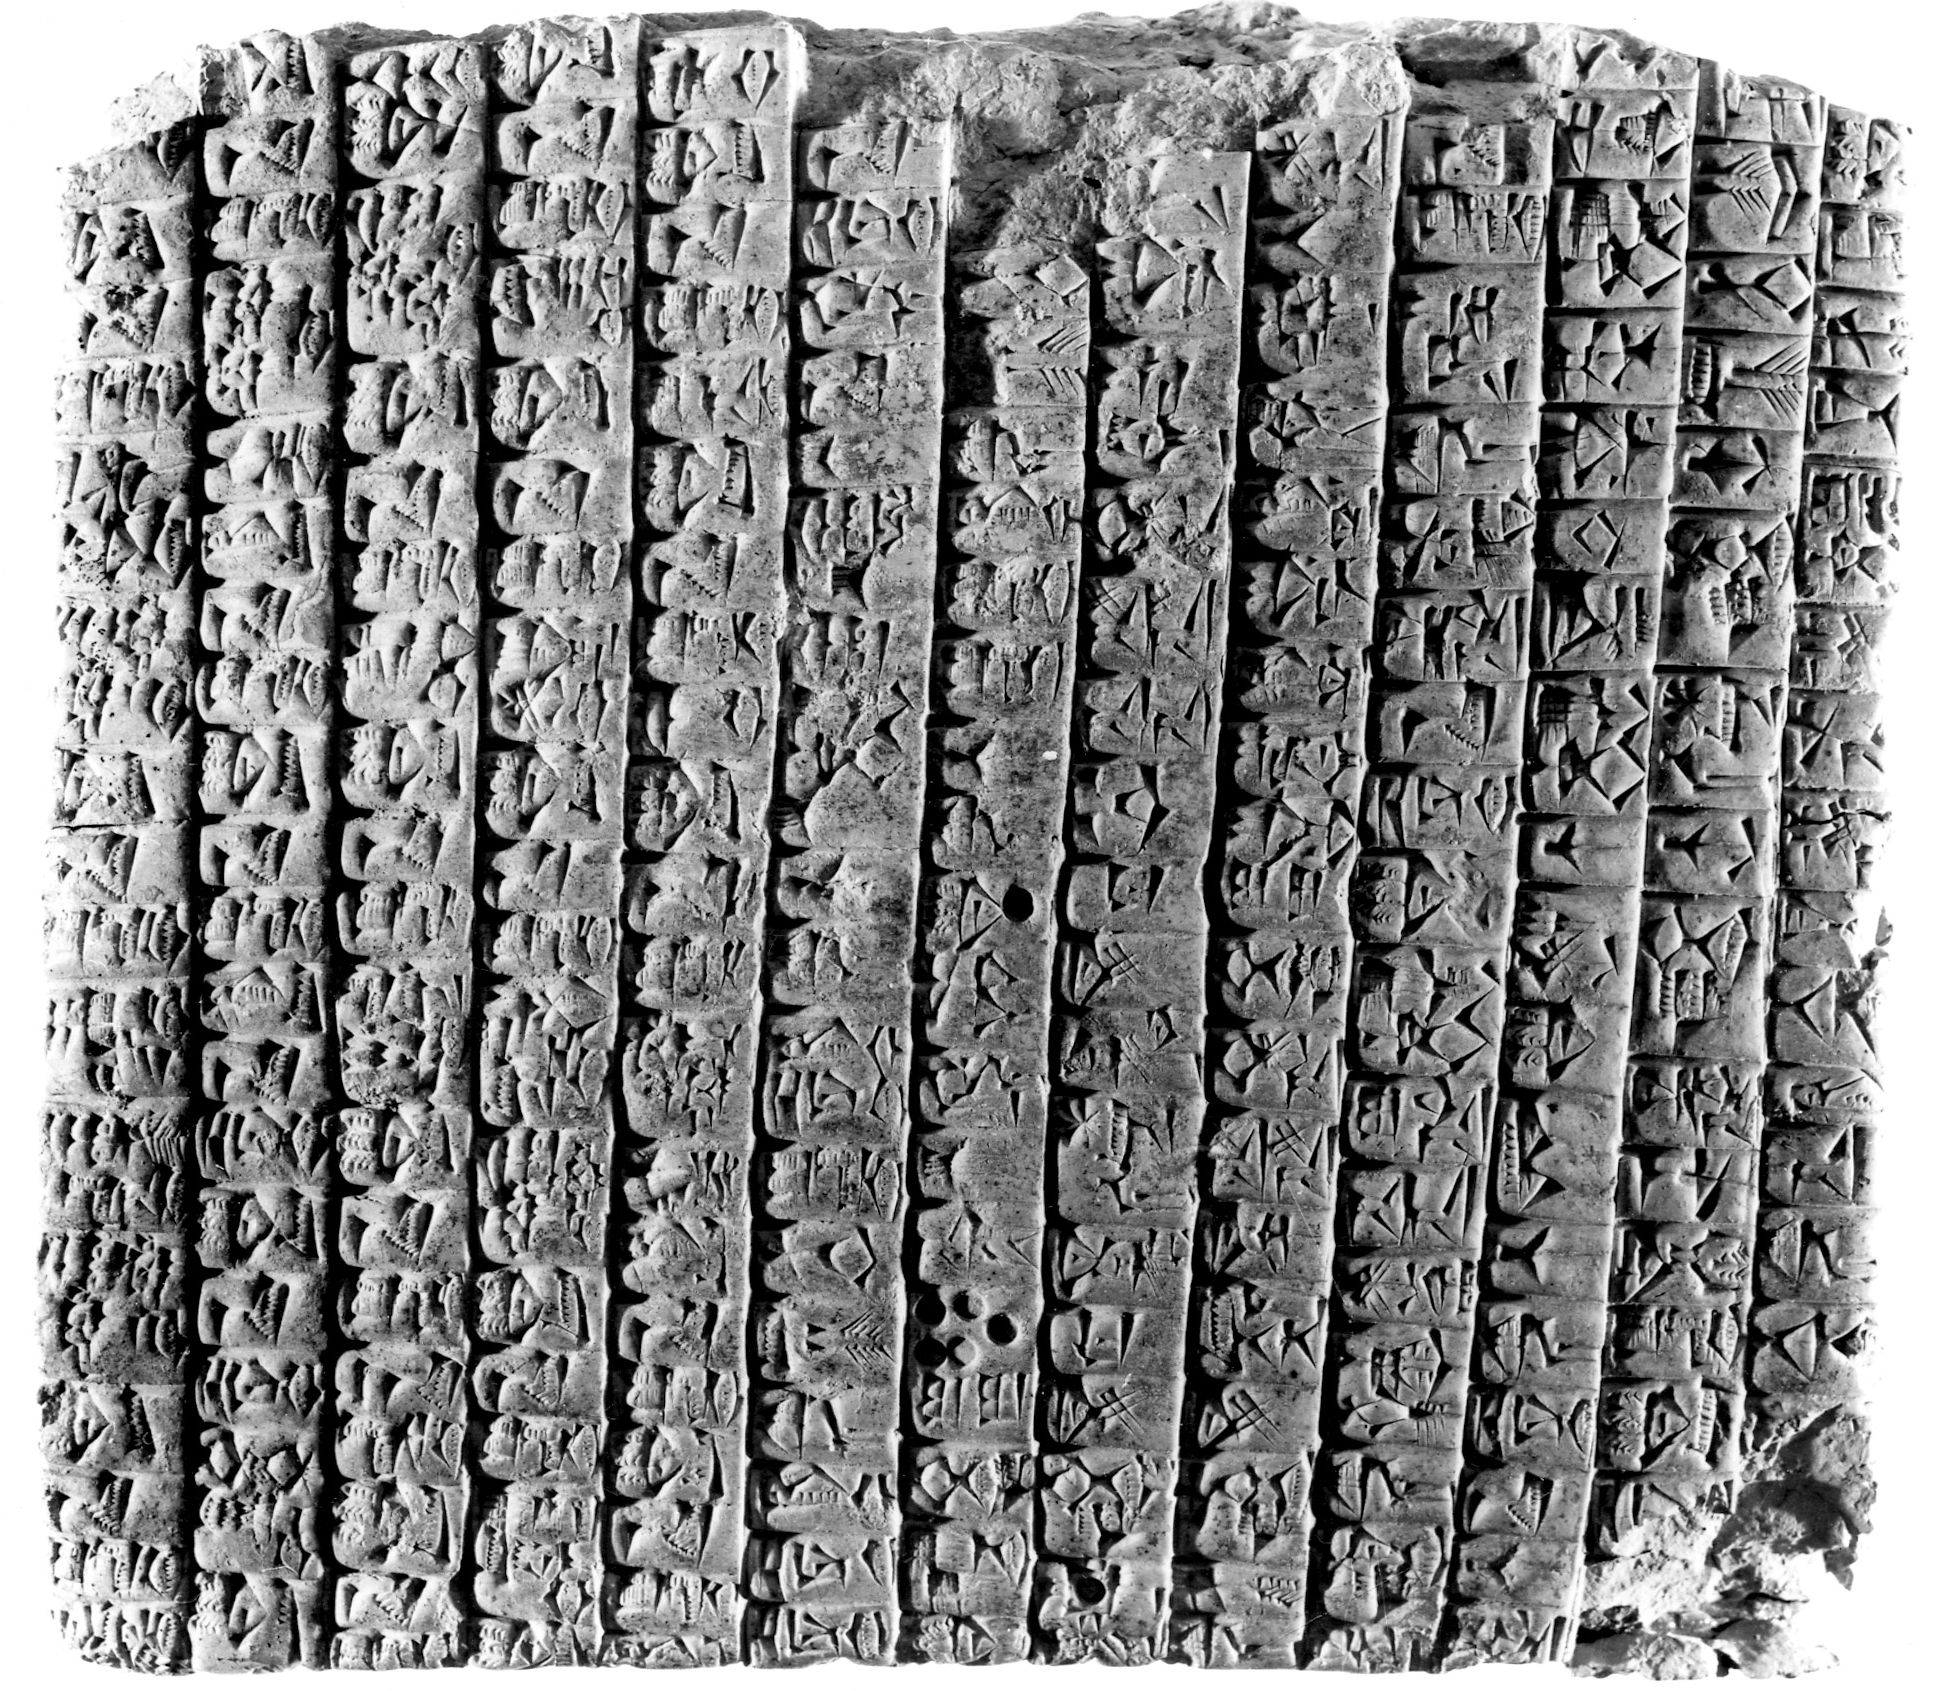 Traité entre Ebla et Abarsal, Ebla, 2350 av. J.-C. (ref ARET 13, 5) © Mission archéologique de Tell Mardikh